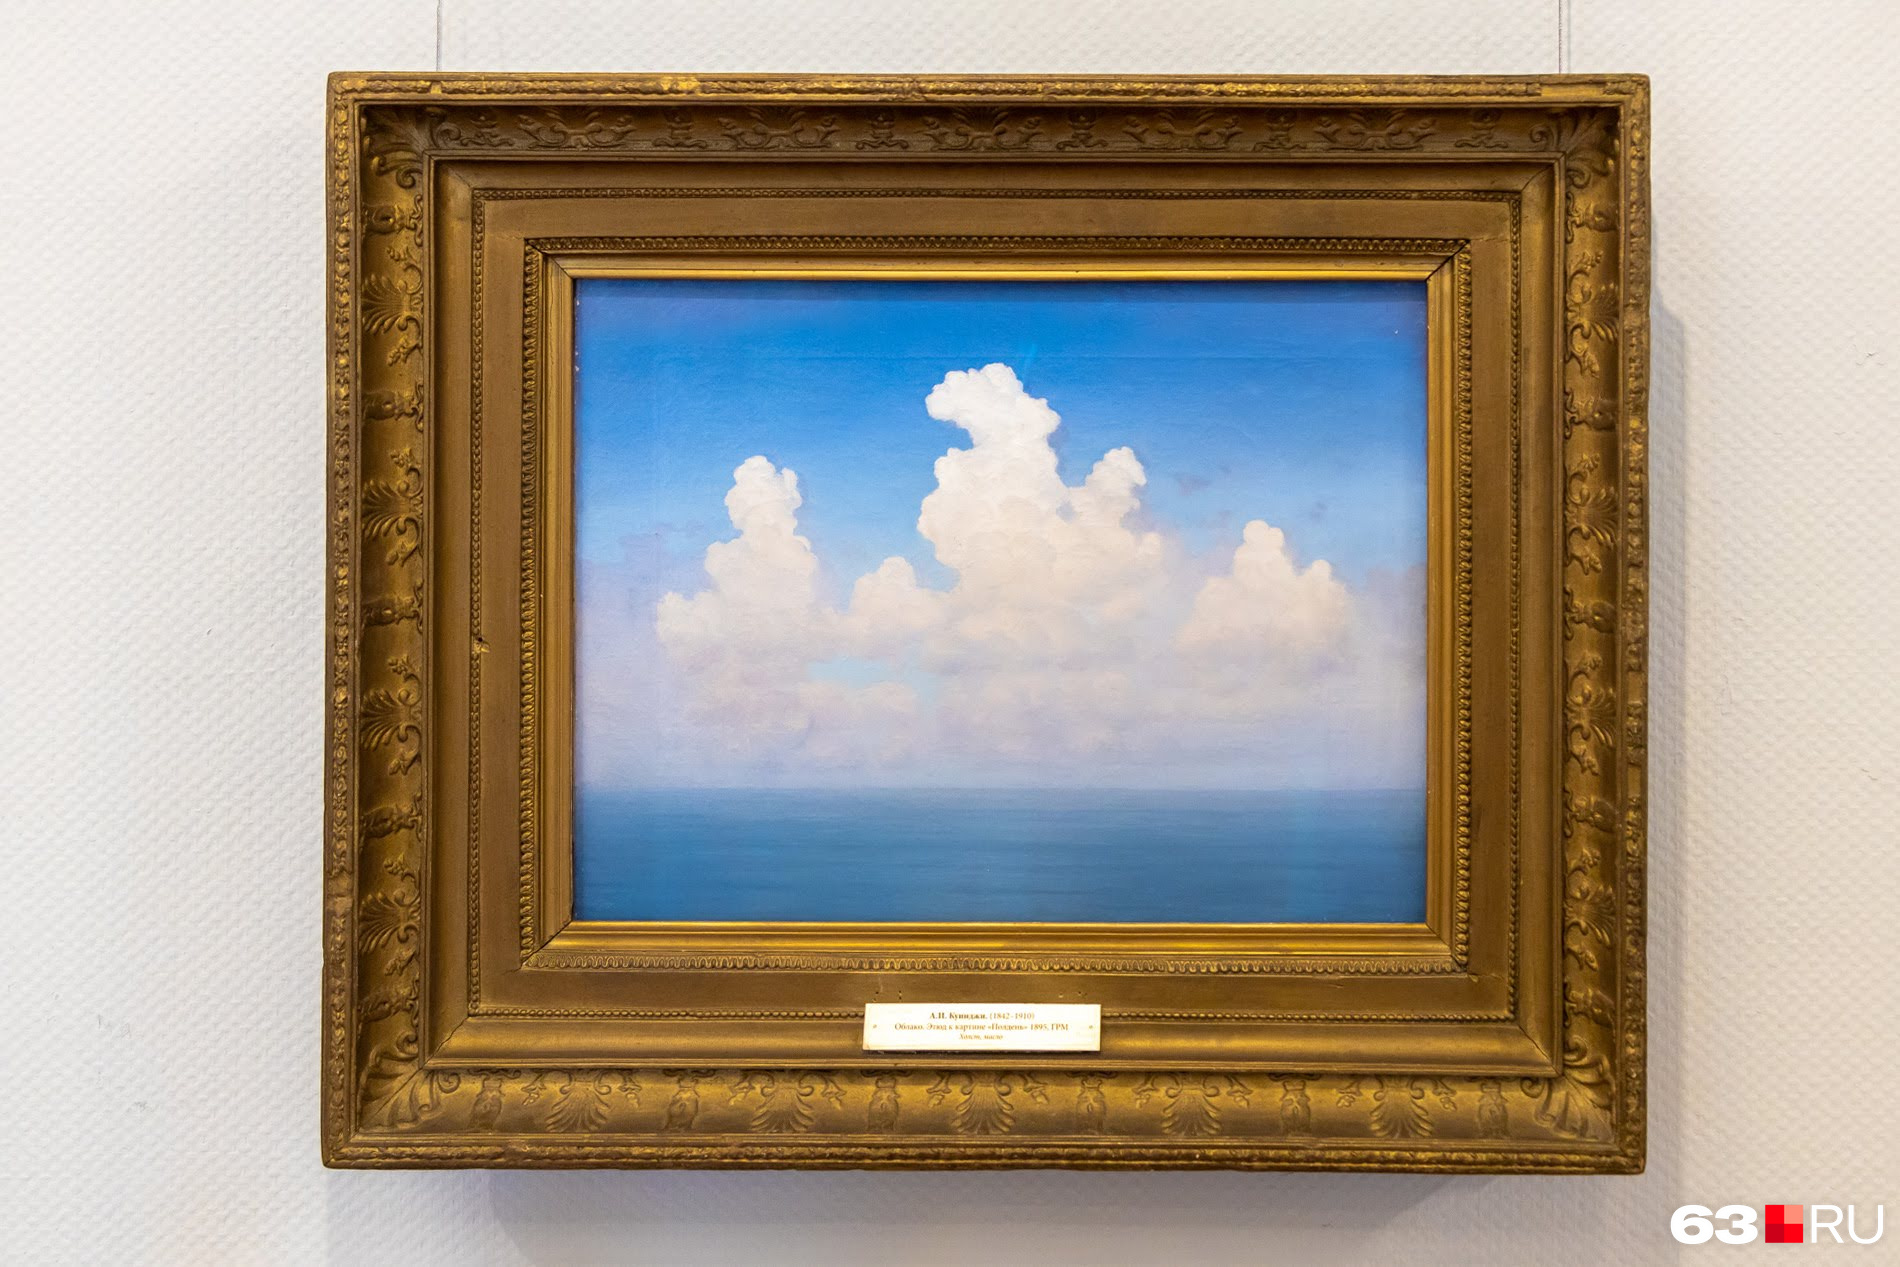 Этюд «Облако» к картине «Полдень» Архип Куинджи написал в 1895 году. Размер картины — 41 на 53 сантиметра